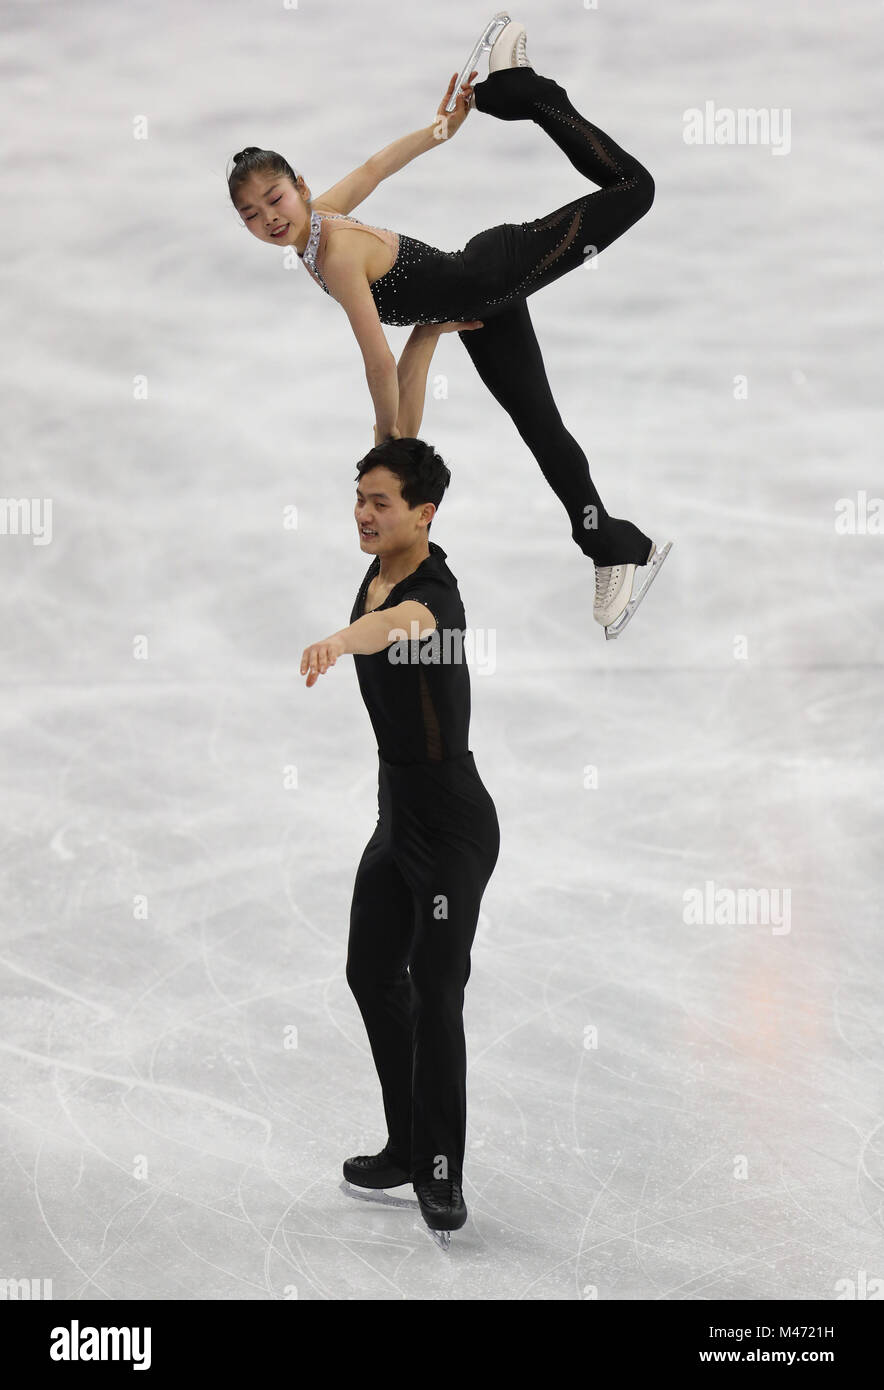 La Corée pas Ju Sik Kim Tae Ok Ryom et pendant les paires de patinage libre Figure Skating Final lors de la sixième journée des Jeux Olympiques d'hiver 2018 de PyeongChang en Corée du Sud. Banque D'Images